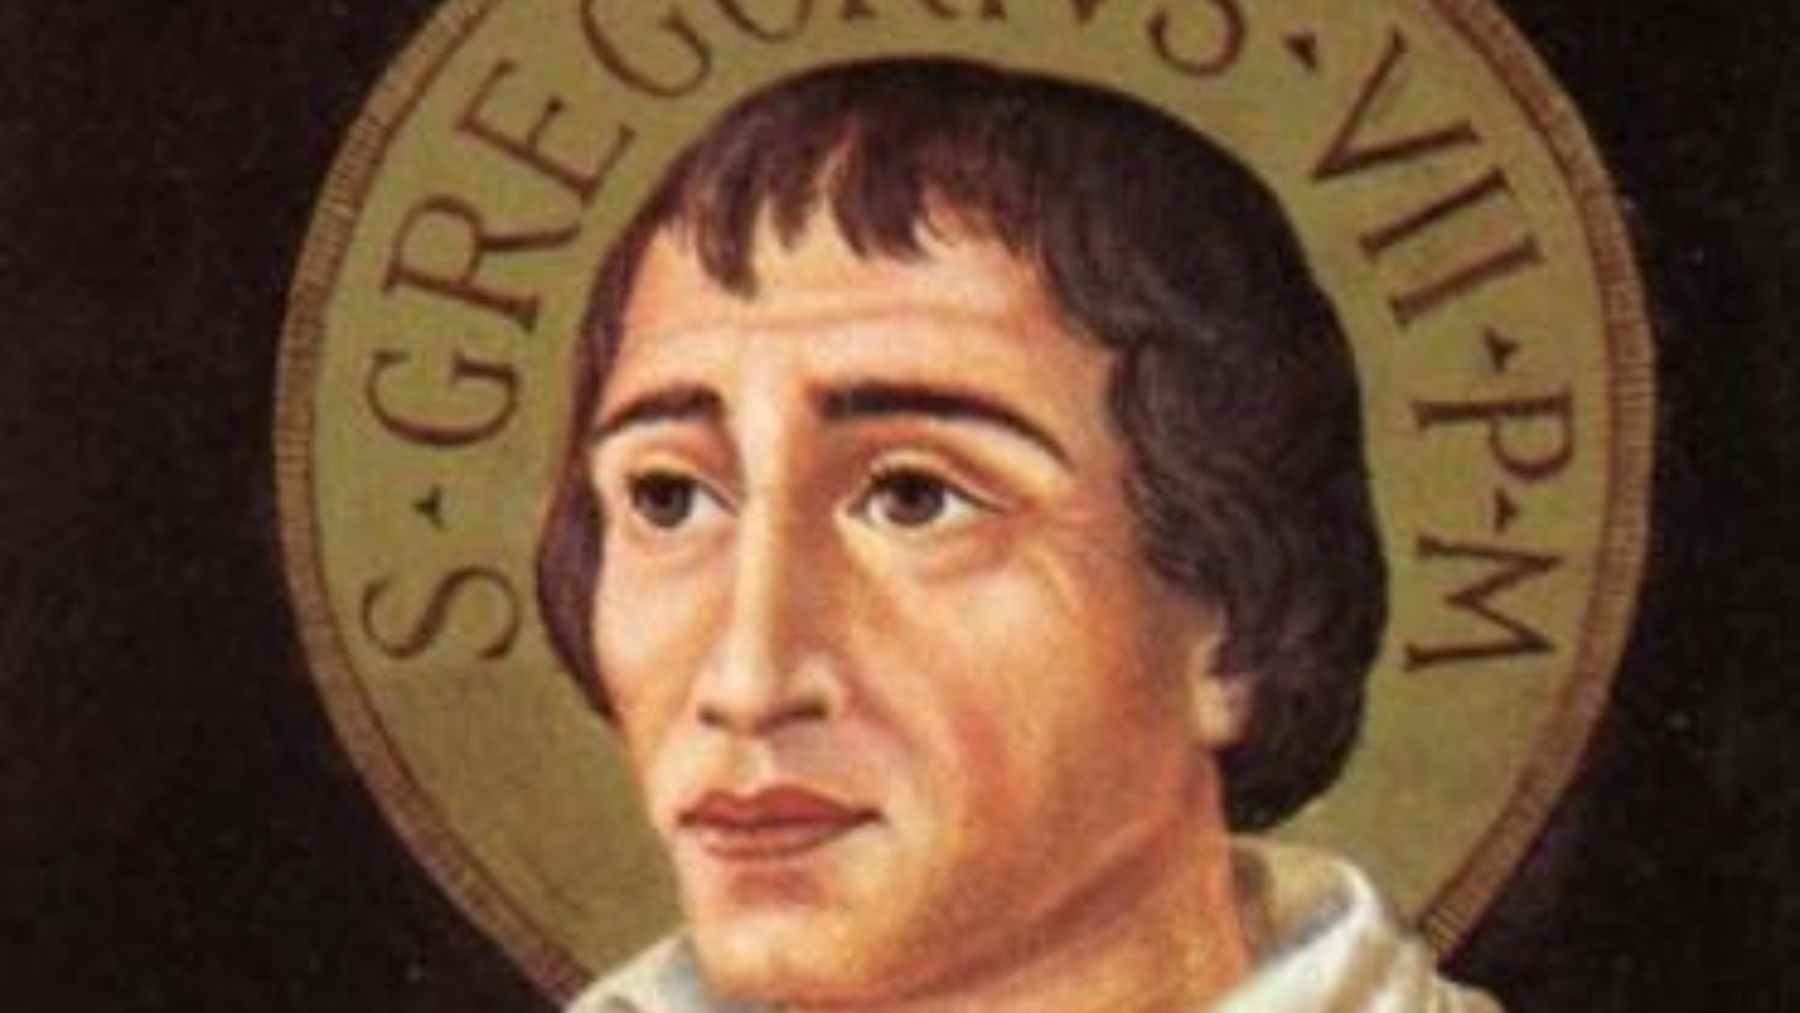 San Gregorio VII.